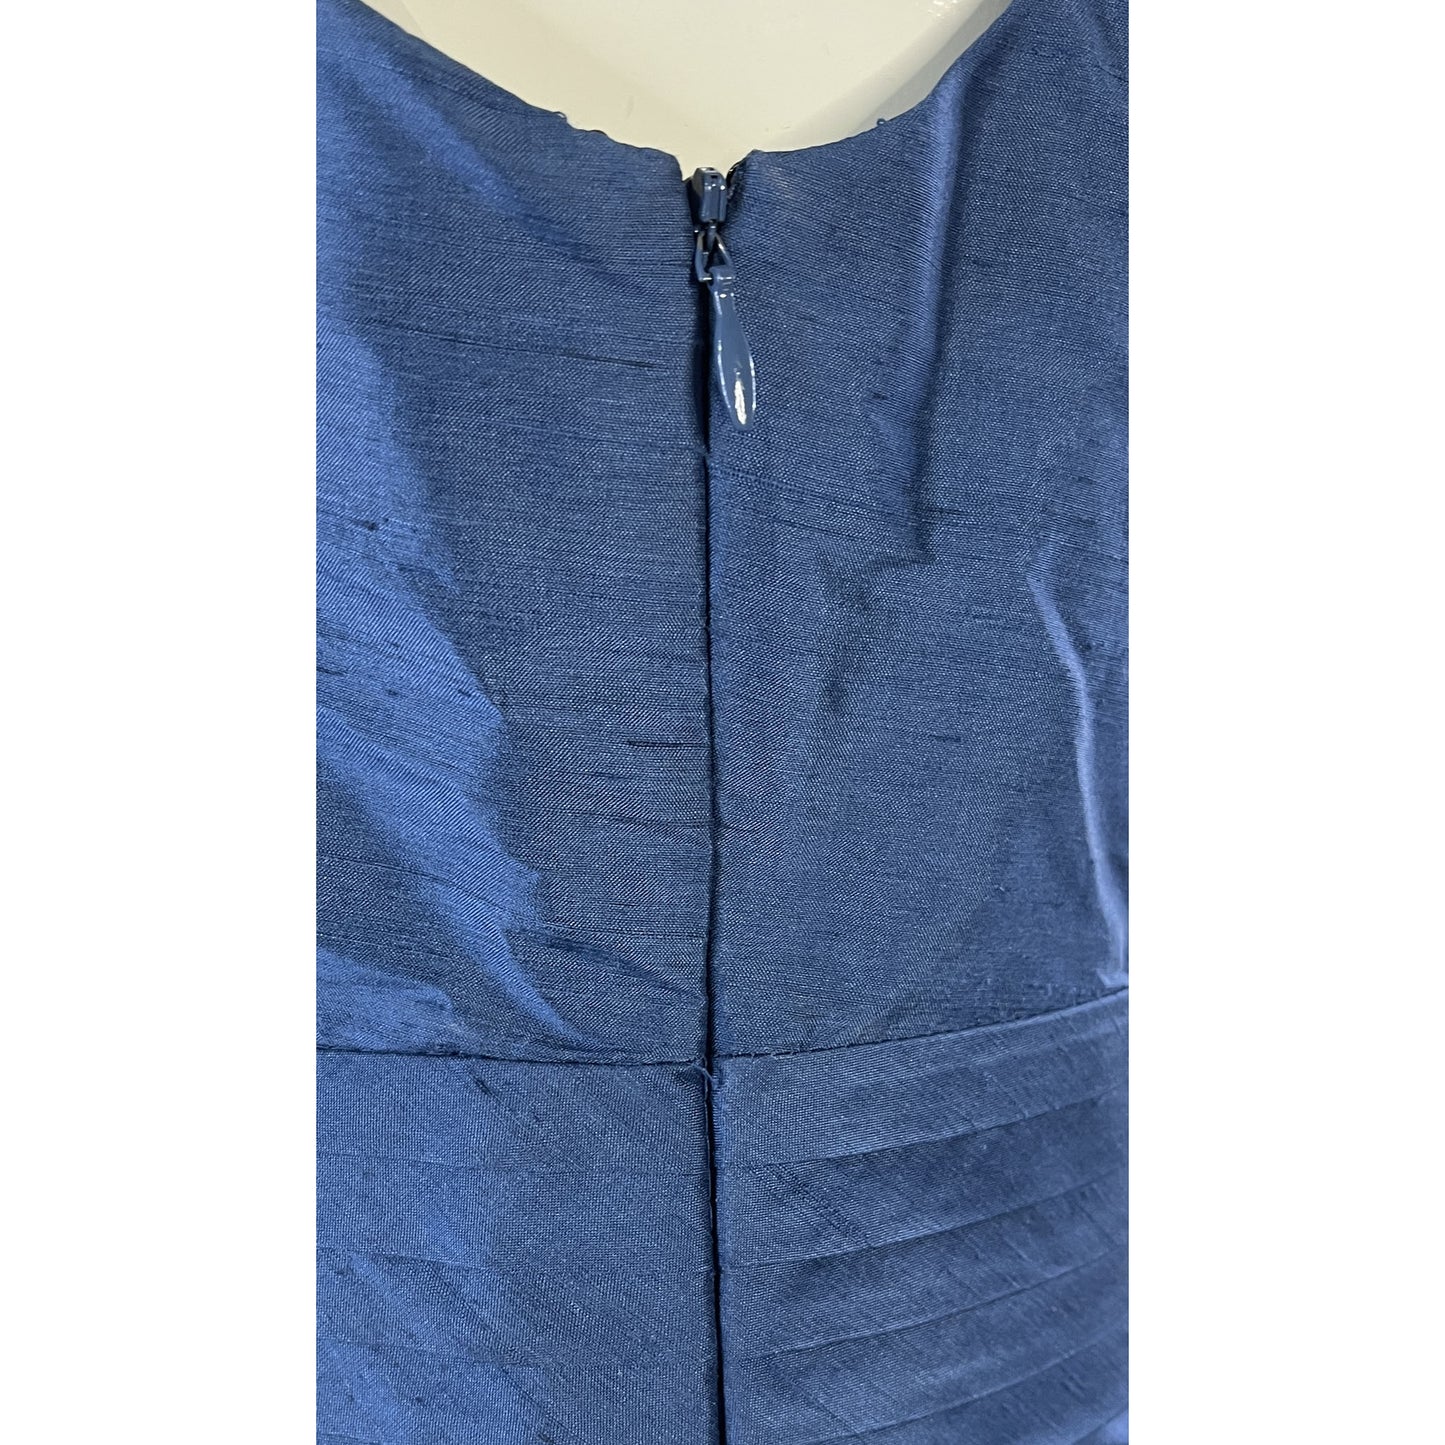 Ann Taylor Dress Above-Knee Sleeveless V-Neck Blue Size 4 SKU 000067-3